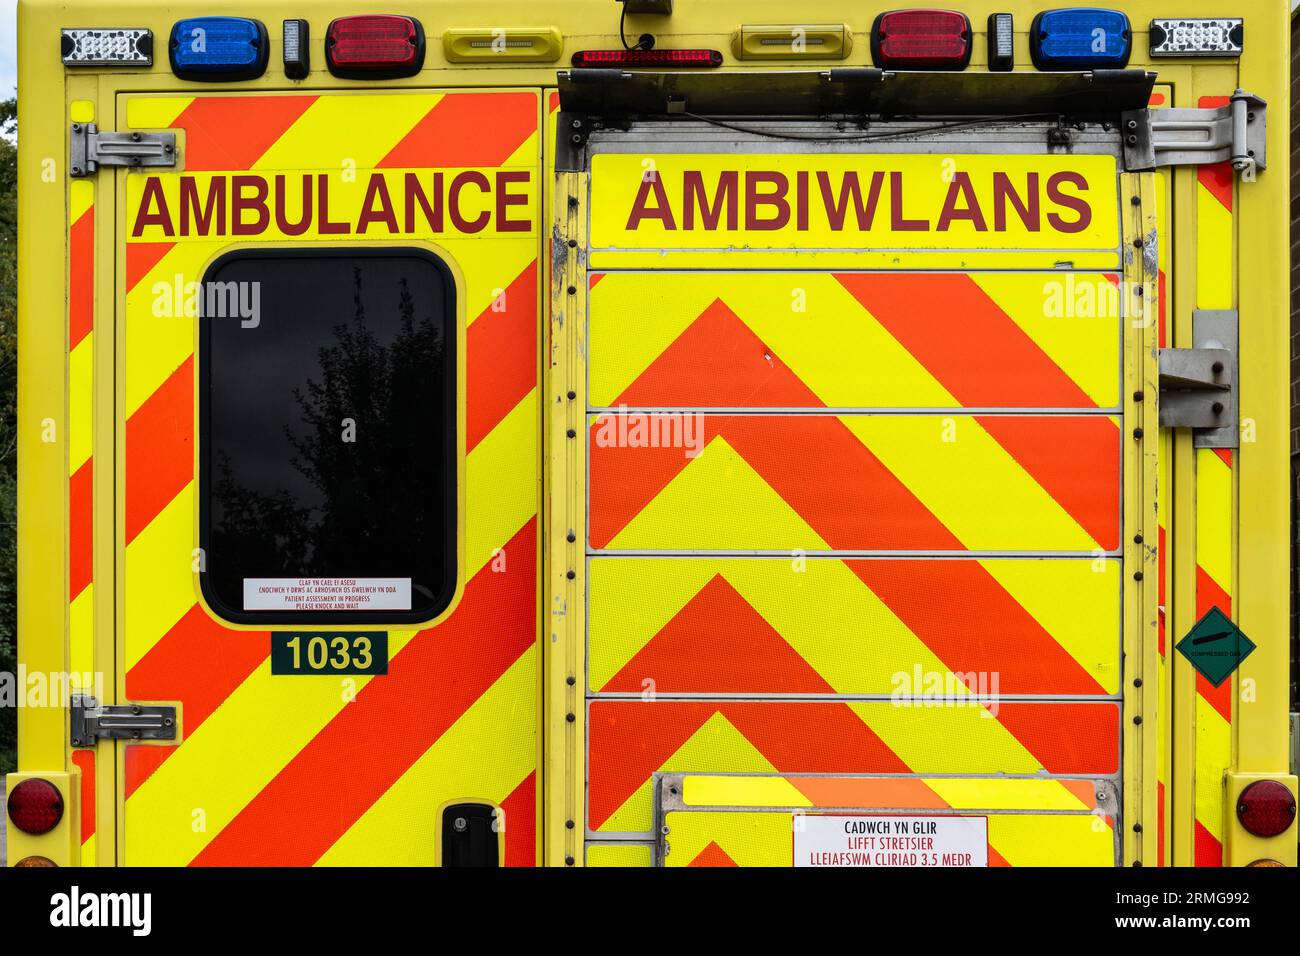 Welsh Ambulance Emergency Service Ambulance Ambiwlans. Vue des couleurs de danger rouge et jaune et de la langue galloise. Pays de Galles NHS. Ambulance Trust. 999 Banque D'Images